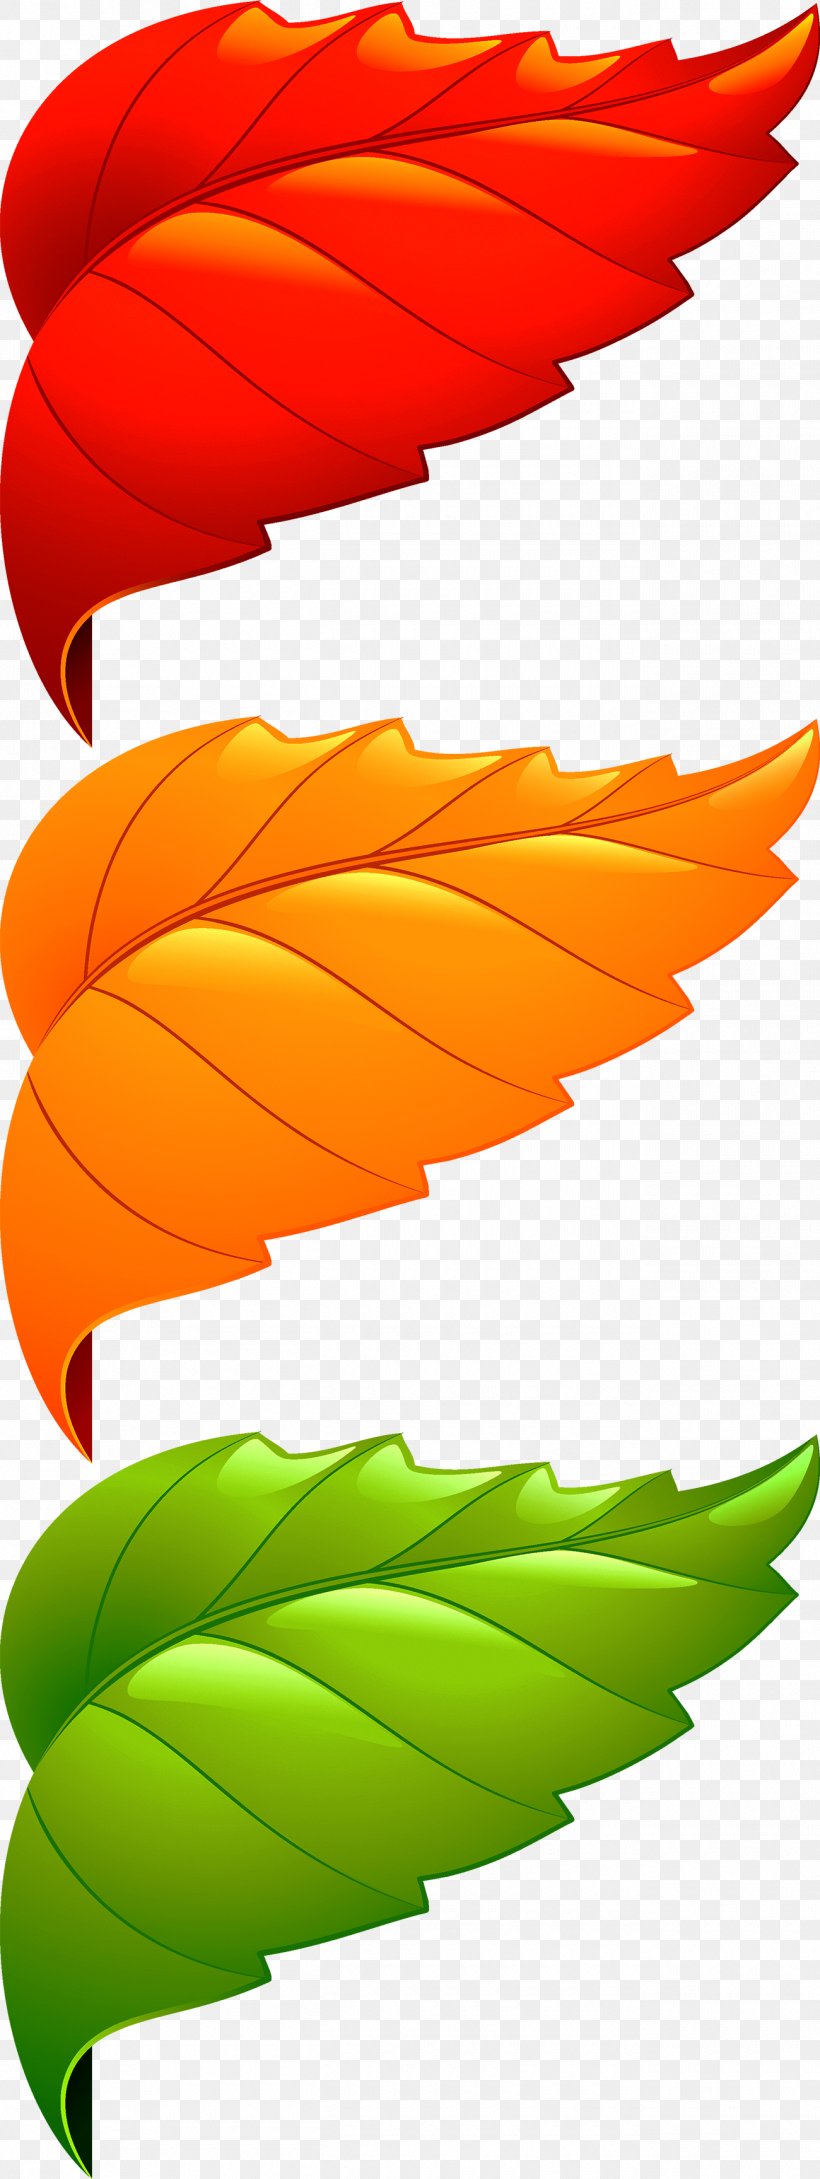 Maple Leaf Adobe Illustrator, PNG, 1300x3456px, Leaf, Orange, Plant, Product Design Download Free